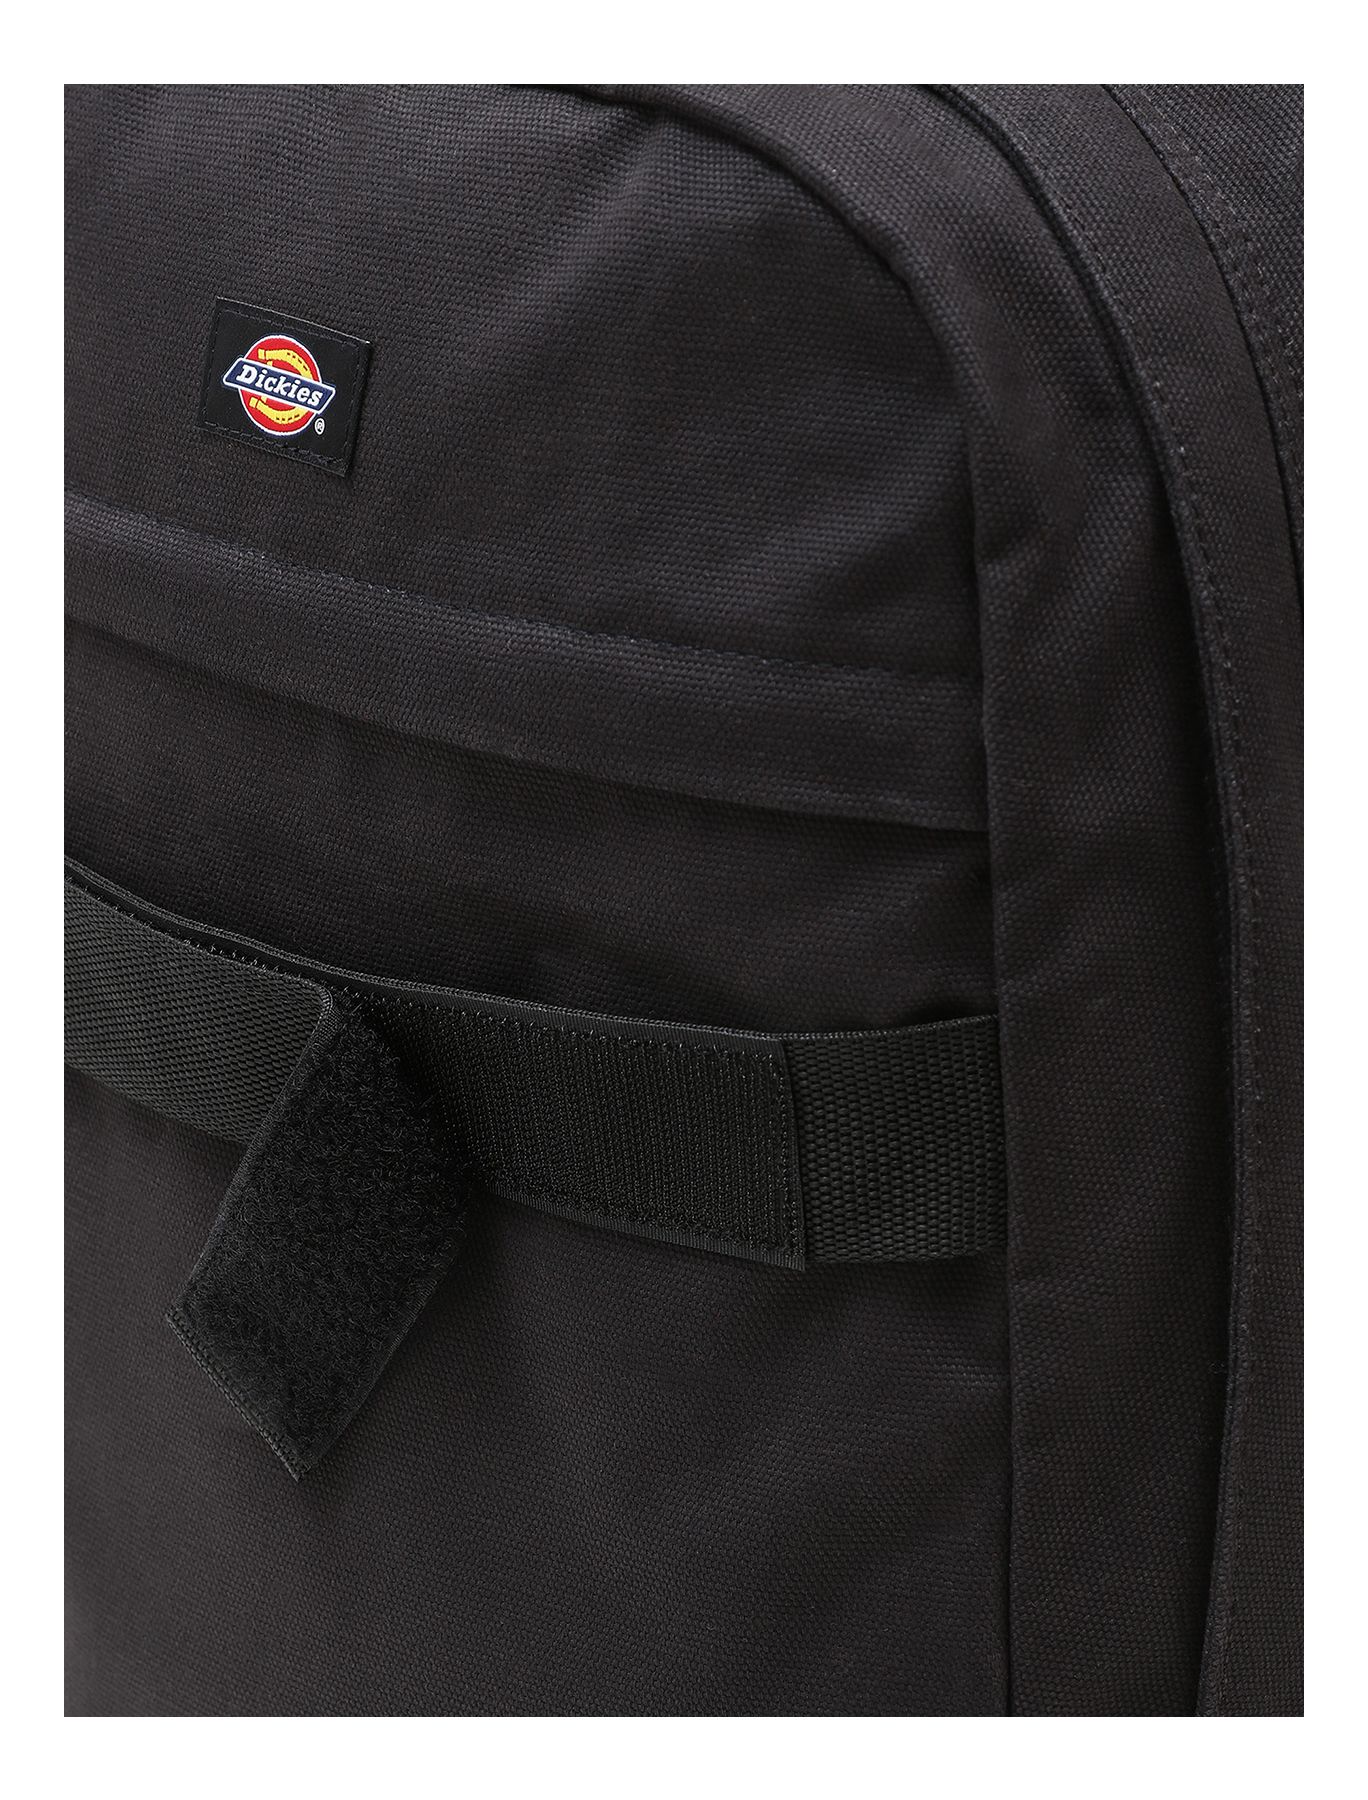 Dickies Duck Canvas Backpack Plus Black